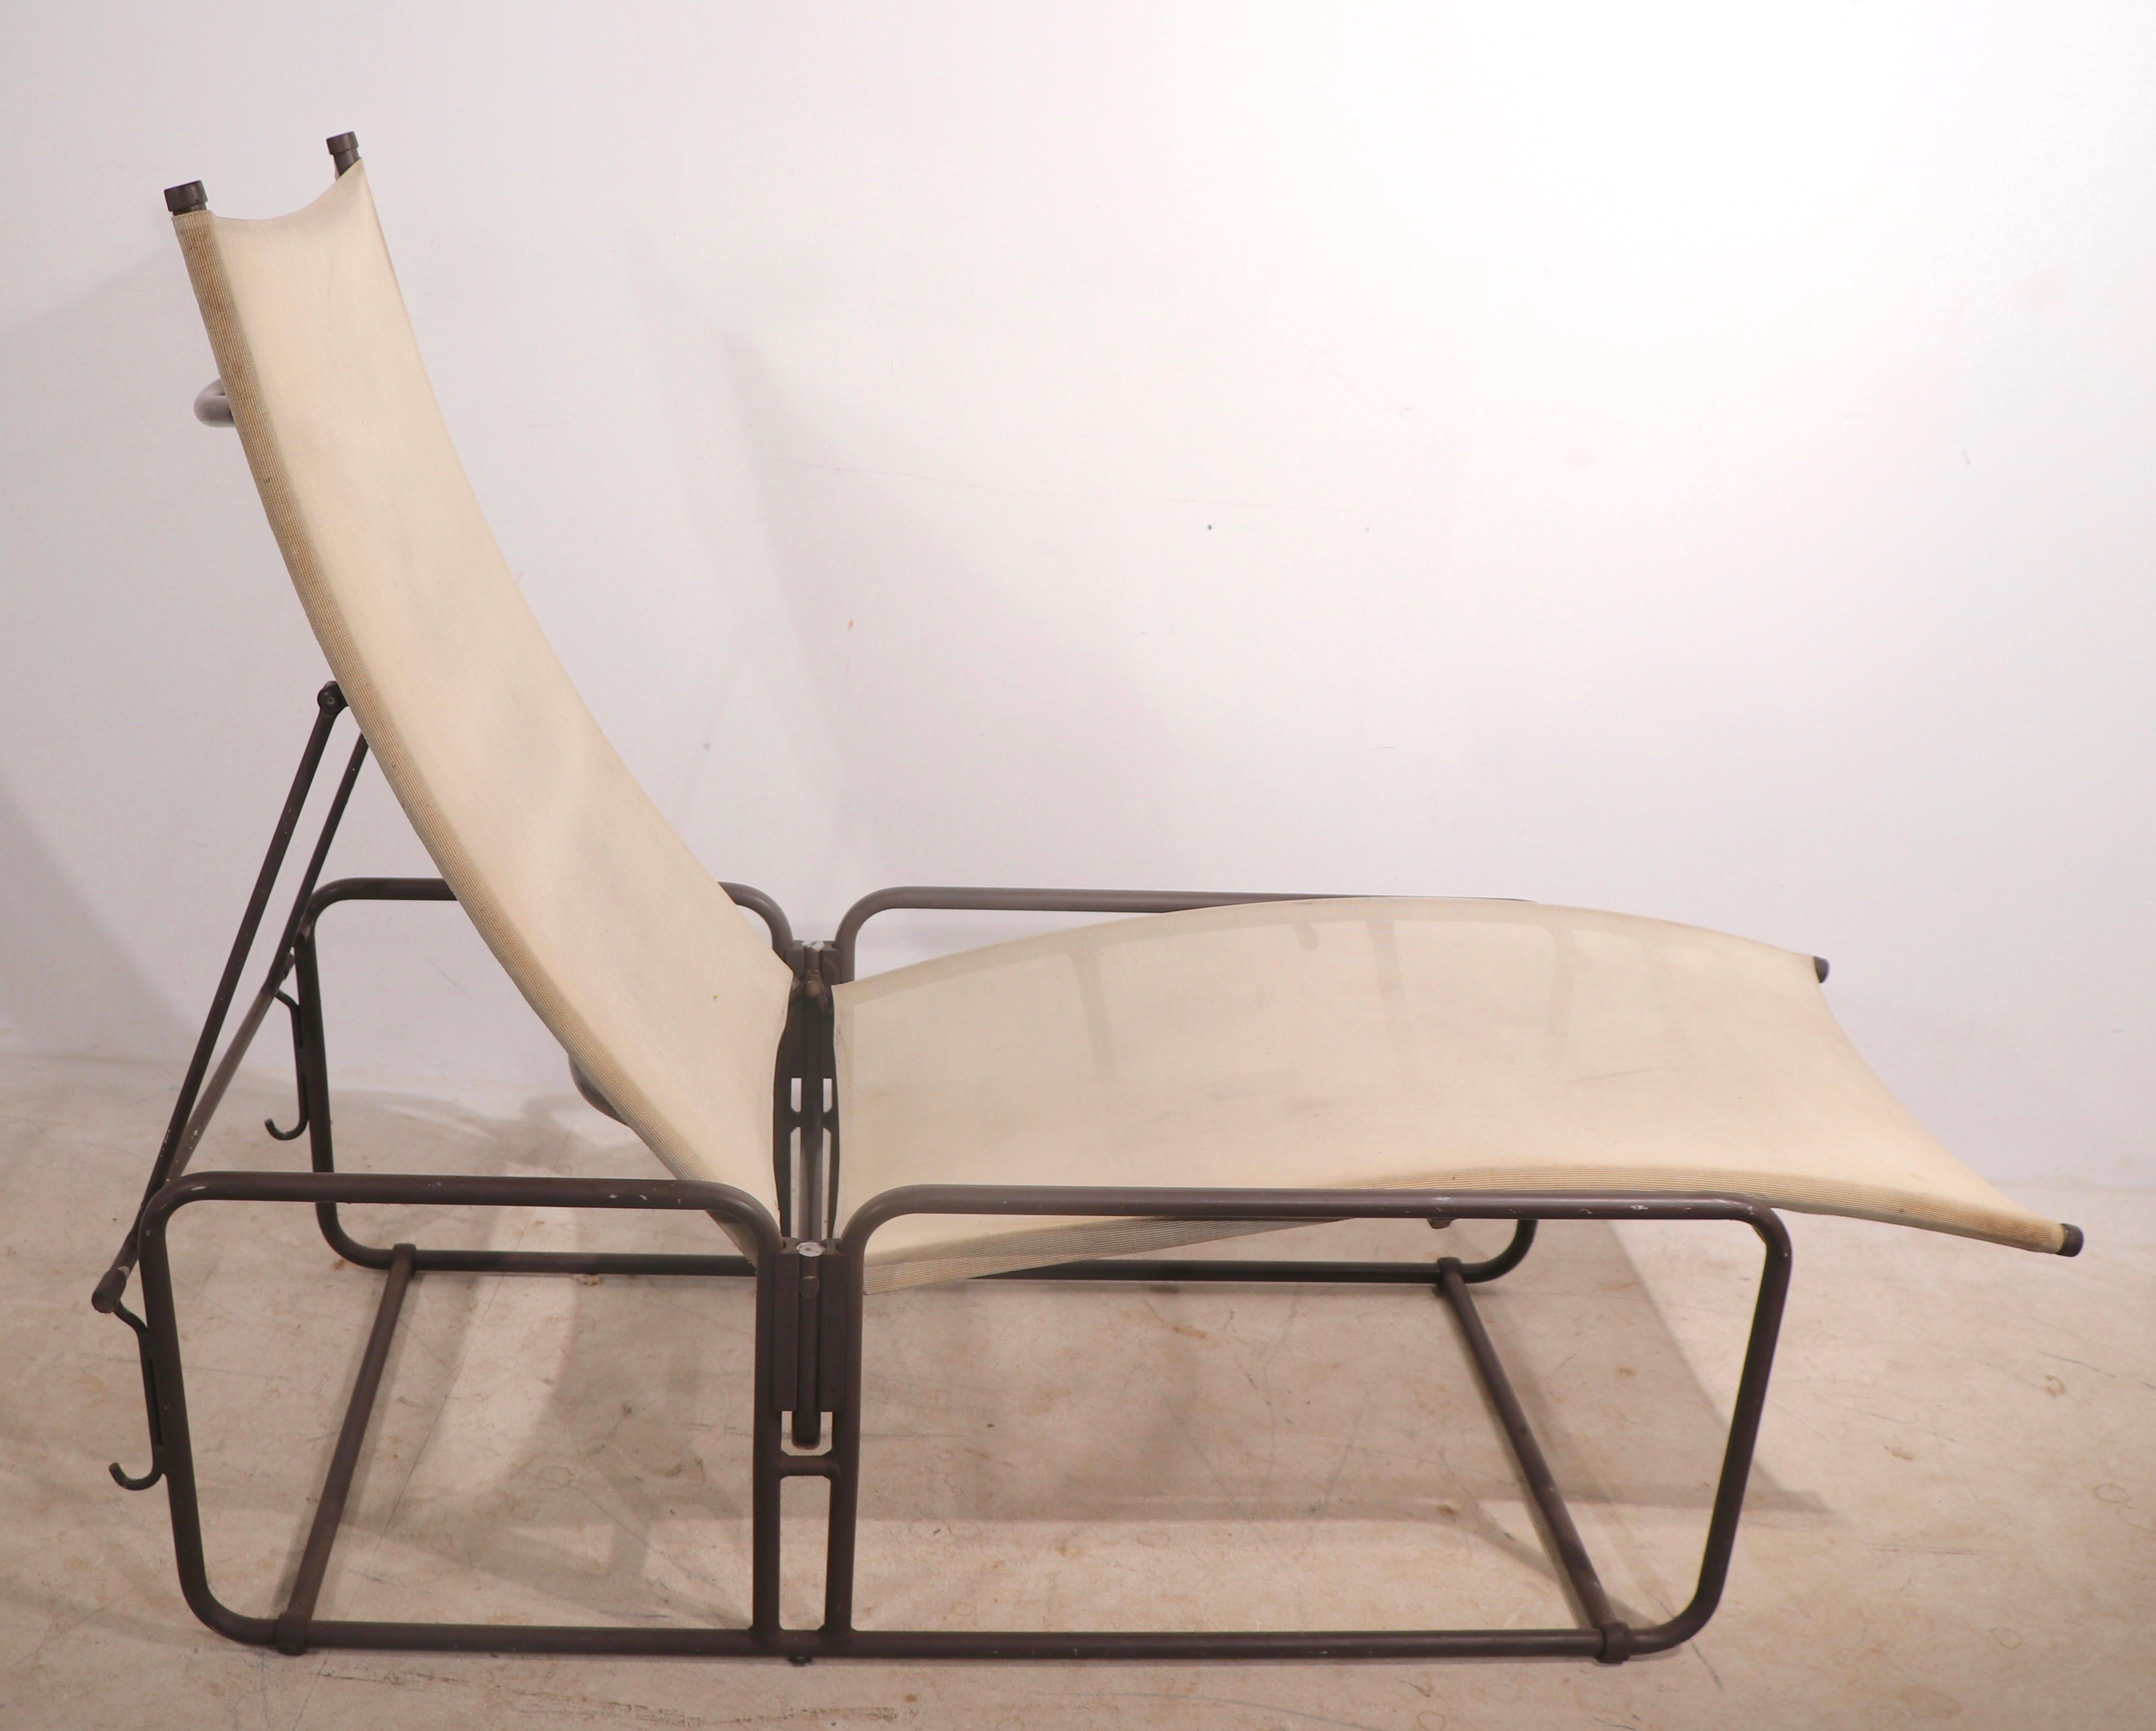 Chaise longue classique de style moderne californien des années 1970 pour jardin, patio ou piscine, de la série Nomad de Brown Jordan. La chaise a un cadre en aluminium léger et un siège et un dossier en toile sophistiqués. Le dossier se règle en